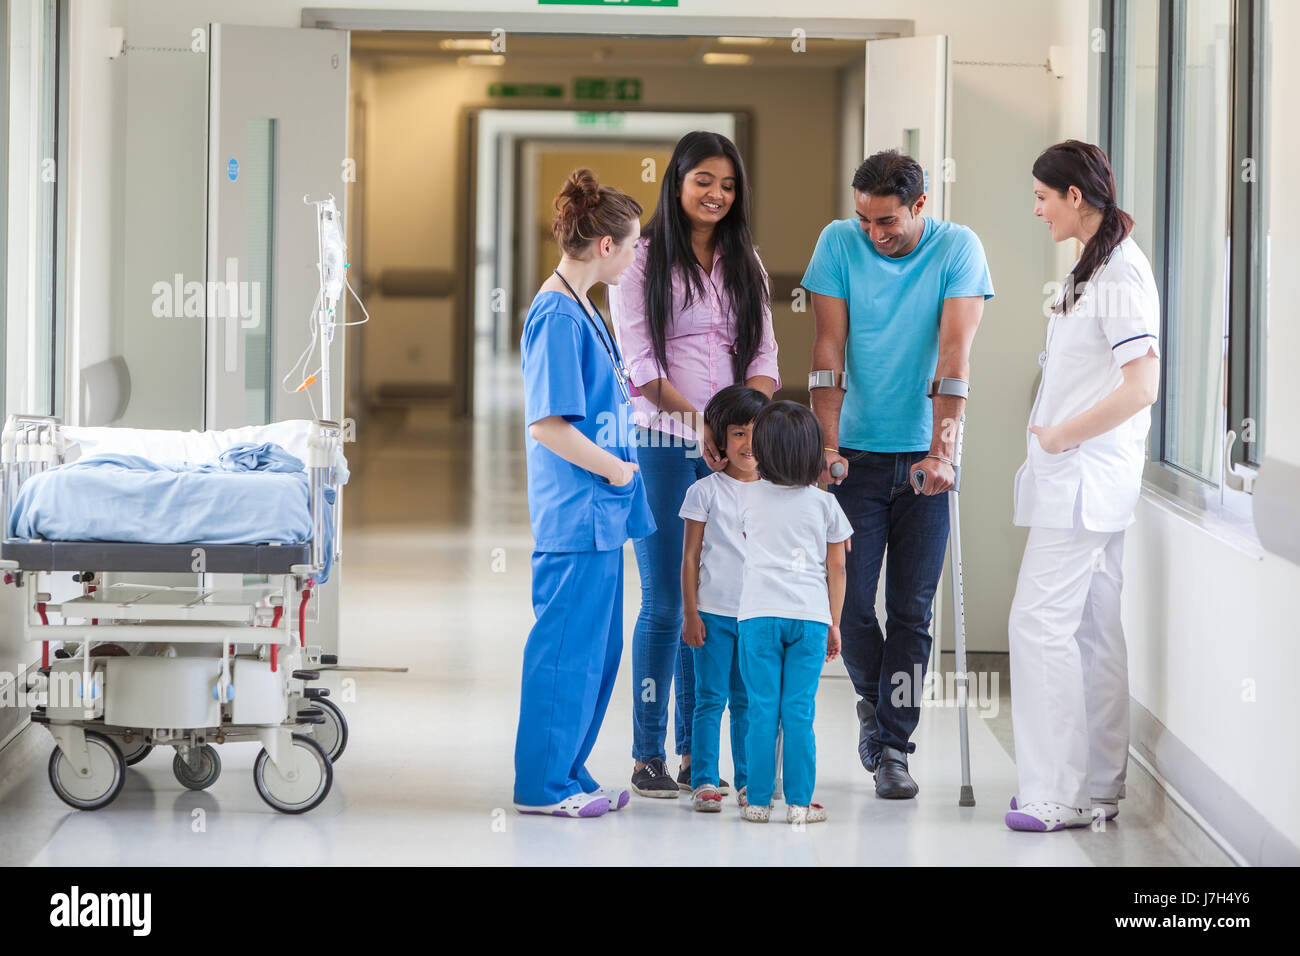 Junge asiatische indische Familie, Eltern und 2 Mädchen weibliche Kinder mit Frau Doktor und Krankenschwester in modernen Krankenhausflur Stockfoto